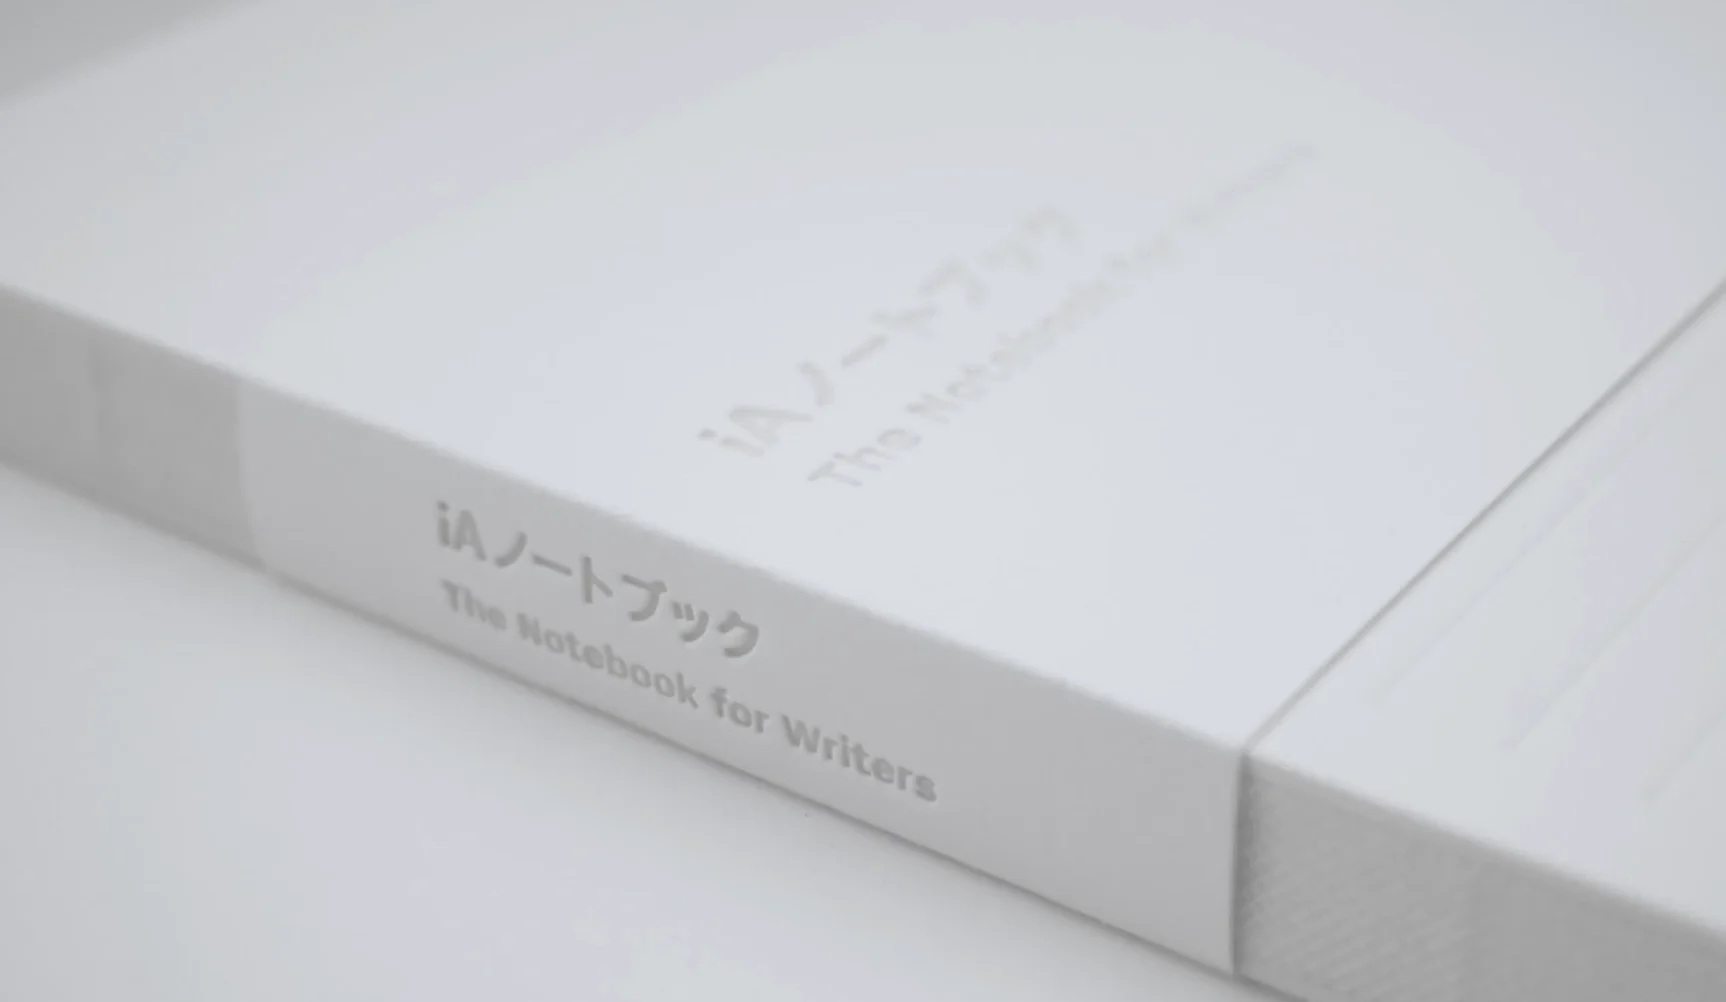 iA Writer, Japanese Made